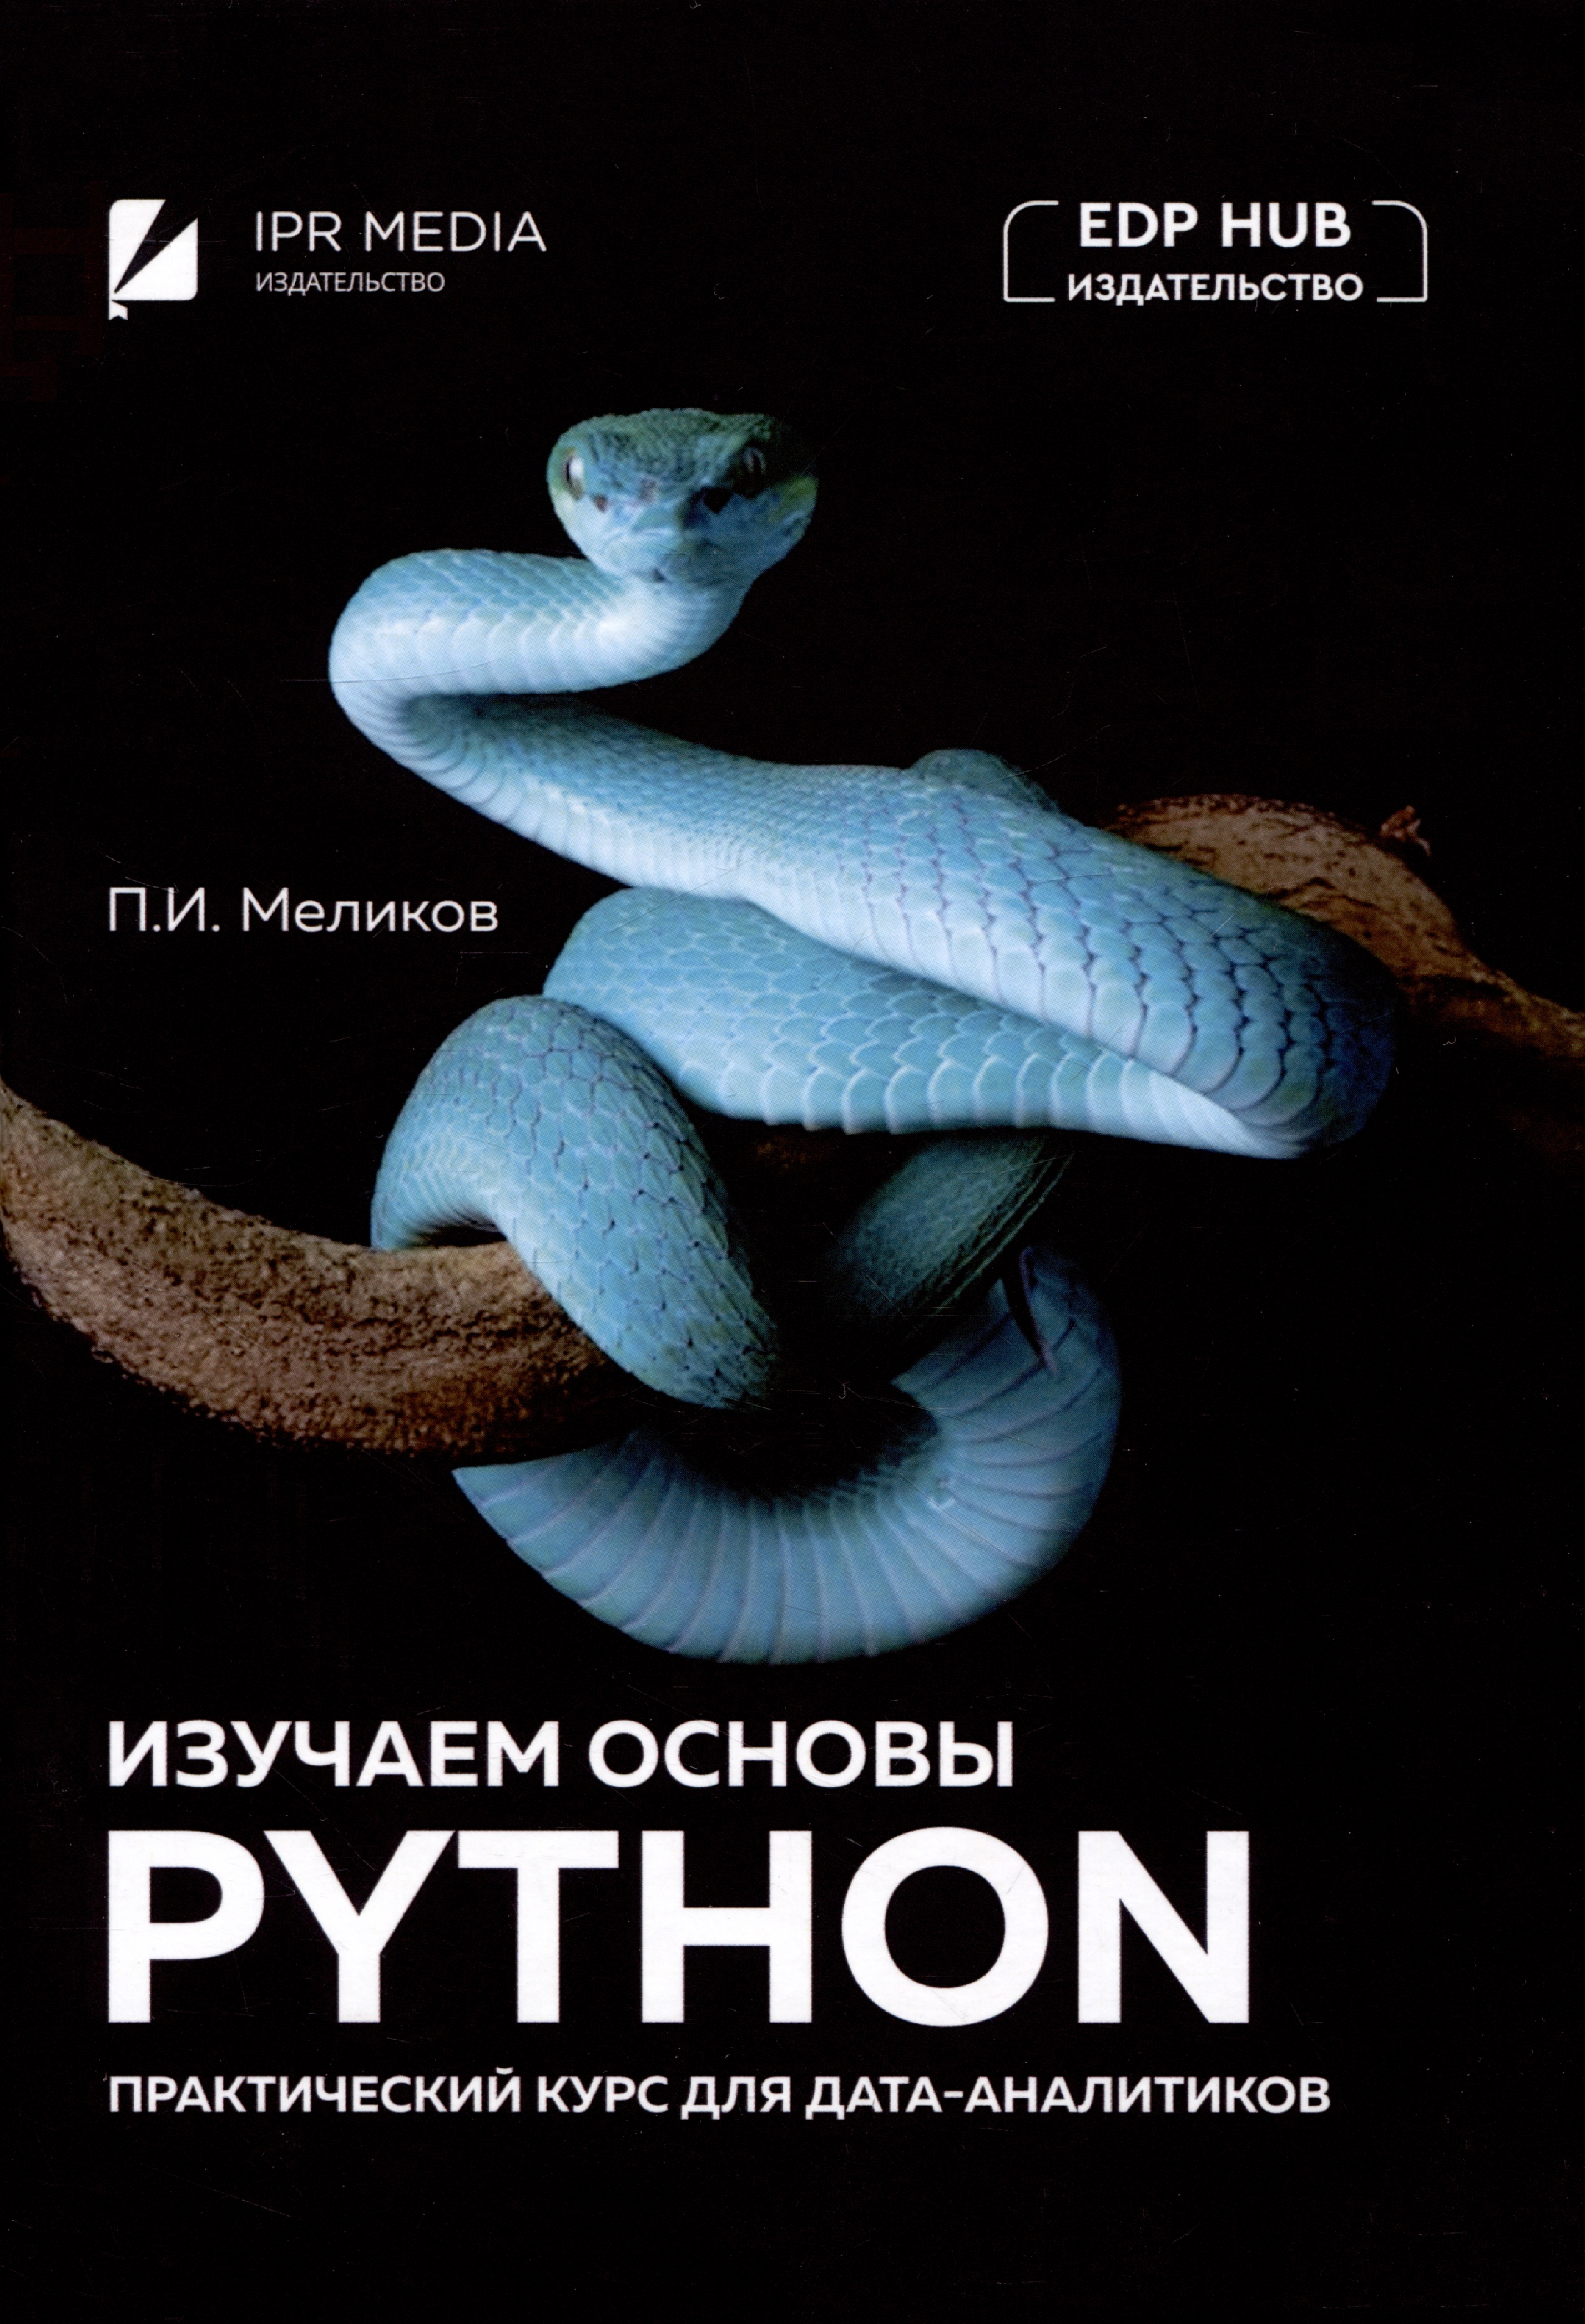 Меликов Павел Ильич Изучаем основы Python. Практический курс для дата-аналитиков python для сложных задач наука о данных и машинное обучение плас вандер д